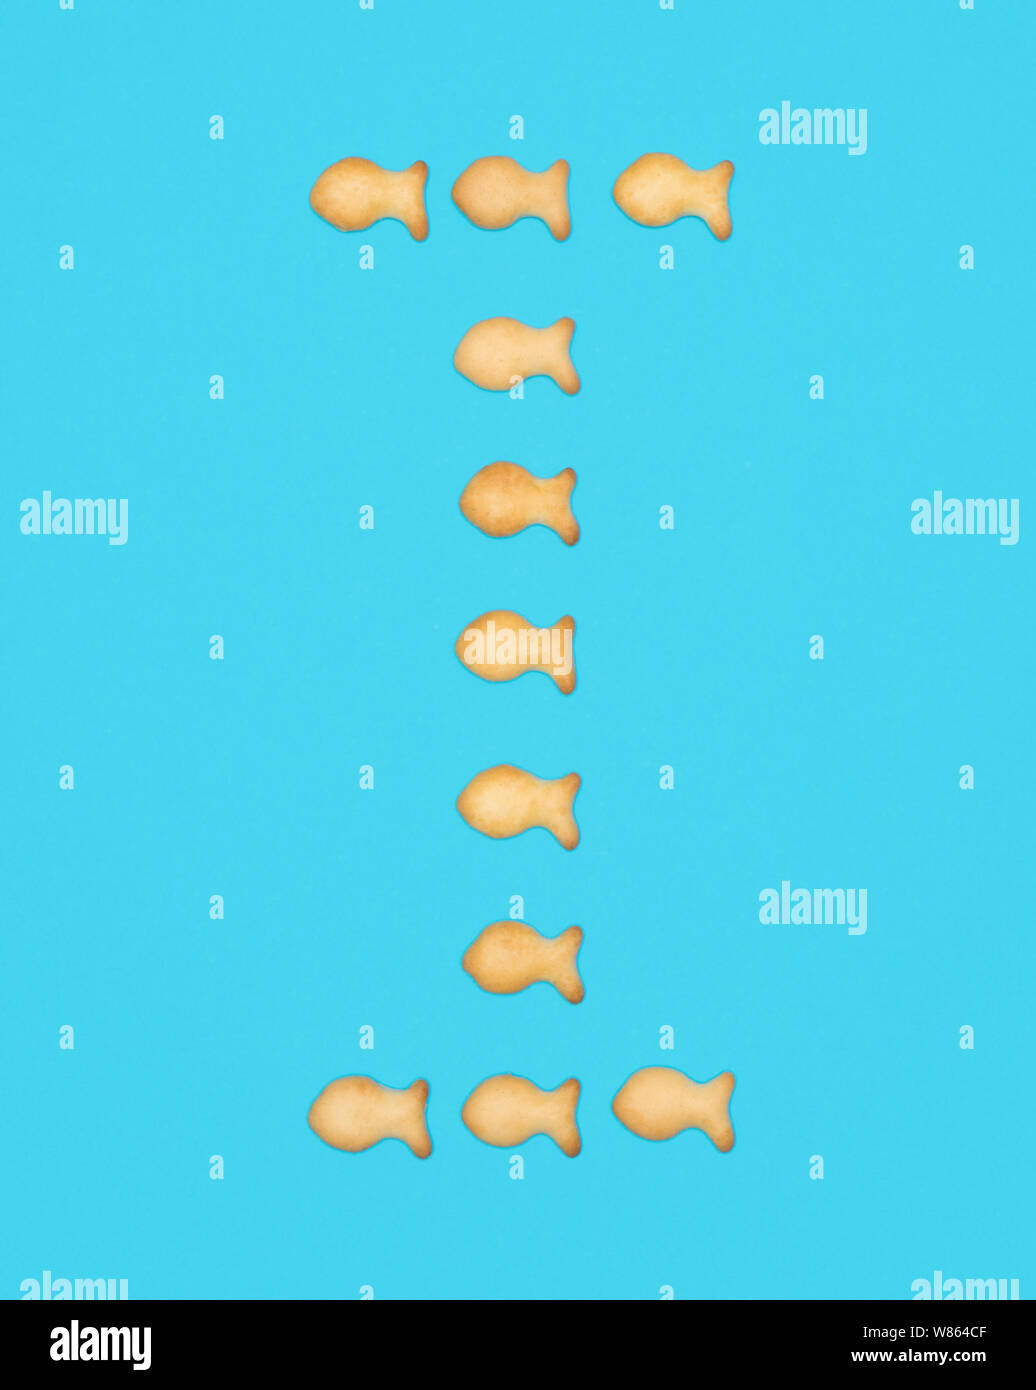 I mayúscula del alfabeto latino de galletas en forma de peces sobre un fondo azul. Foto de stock